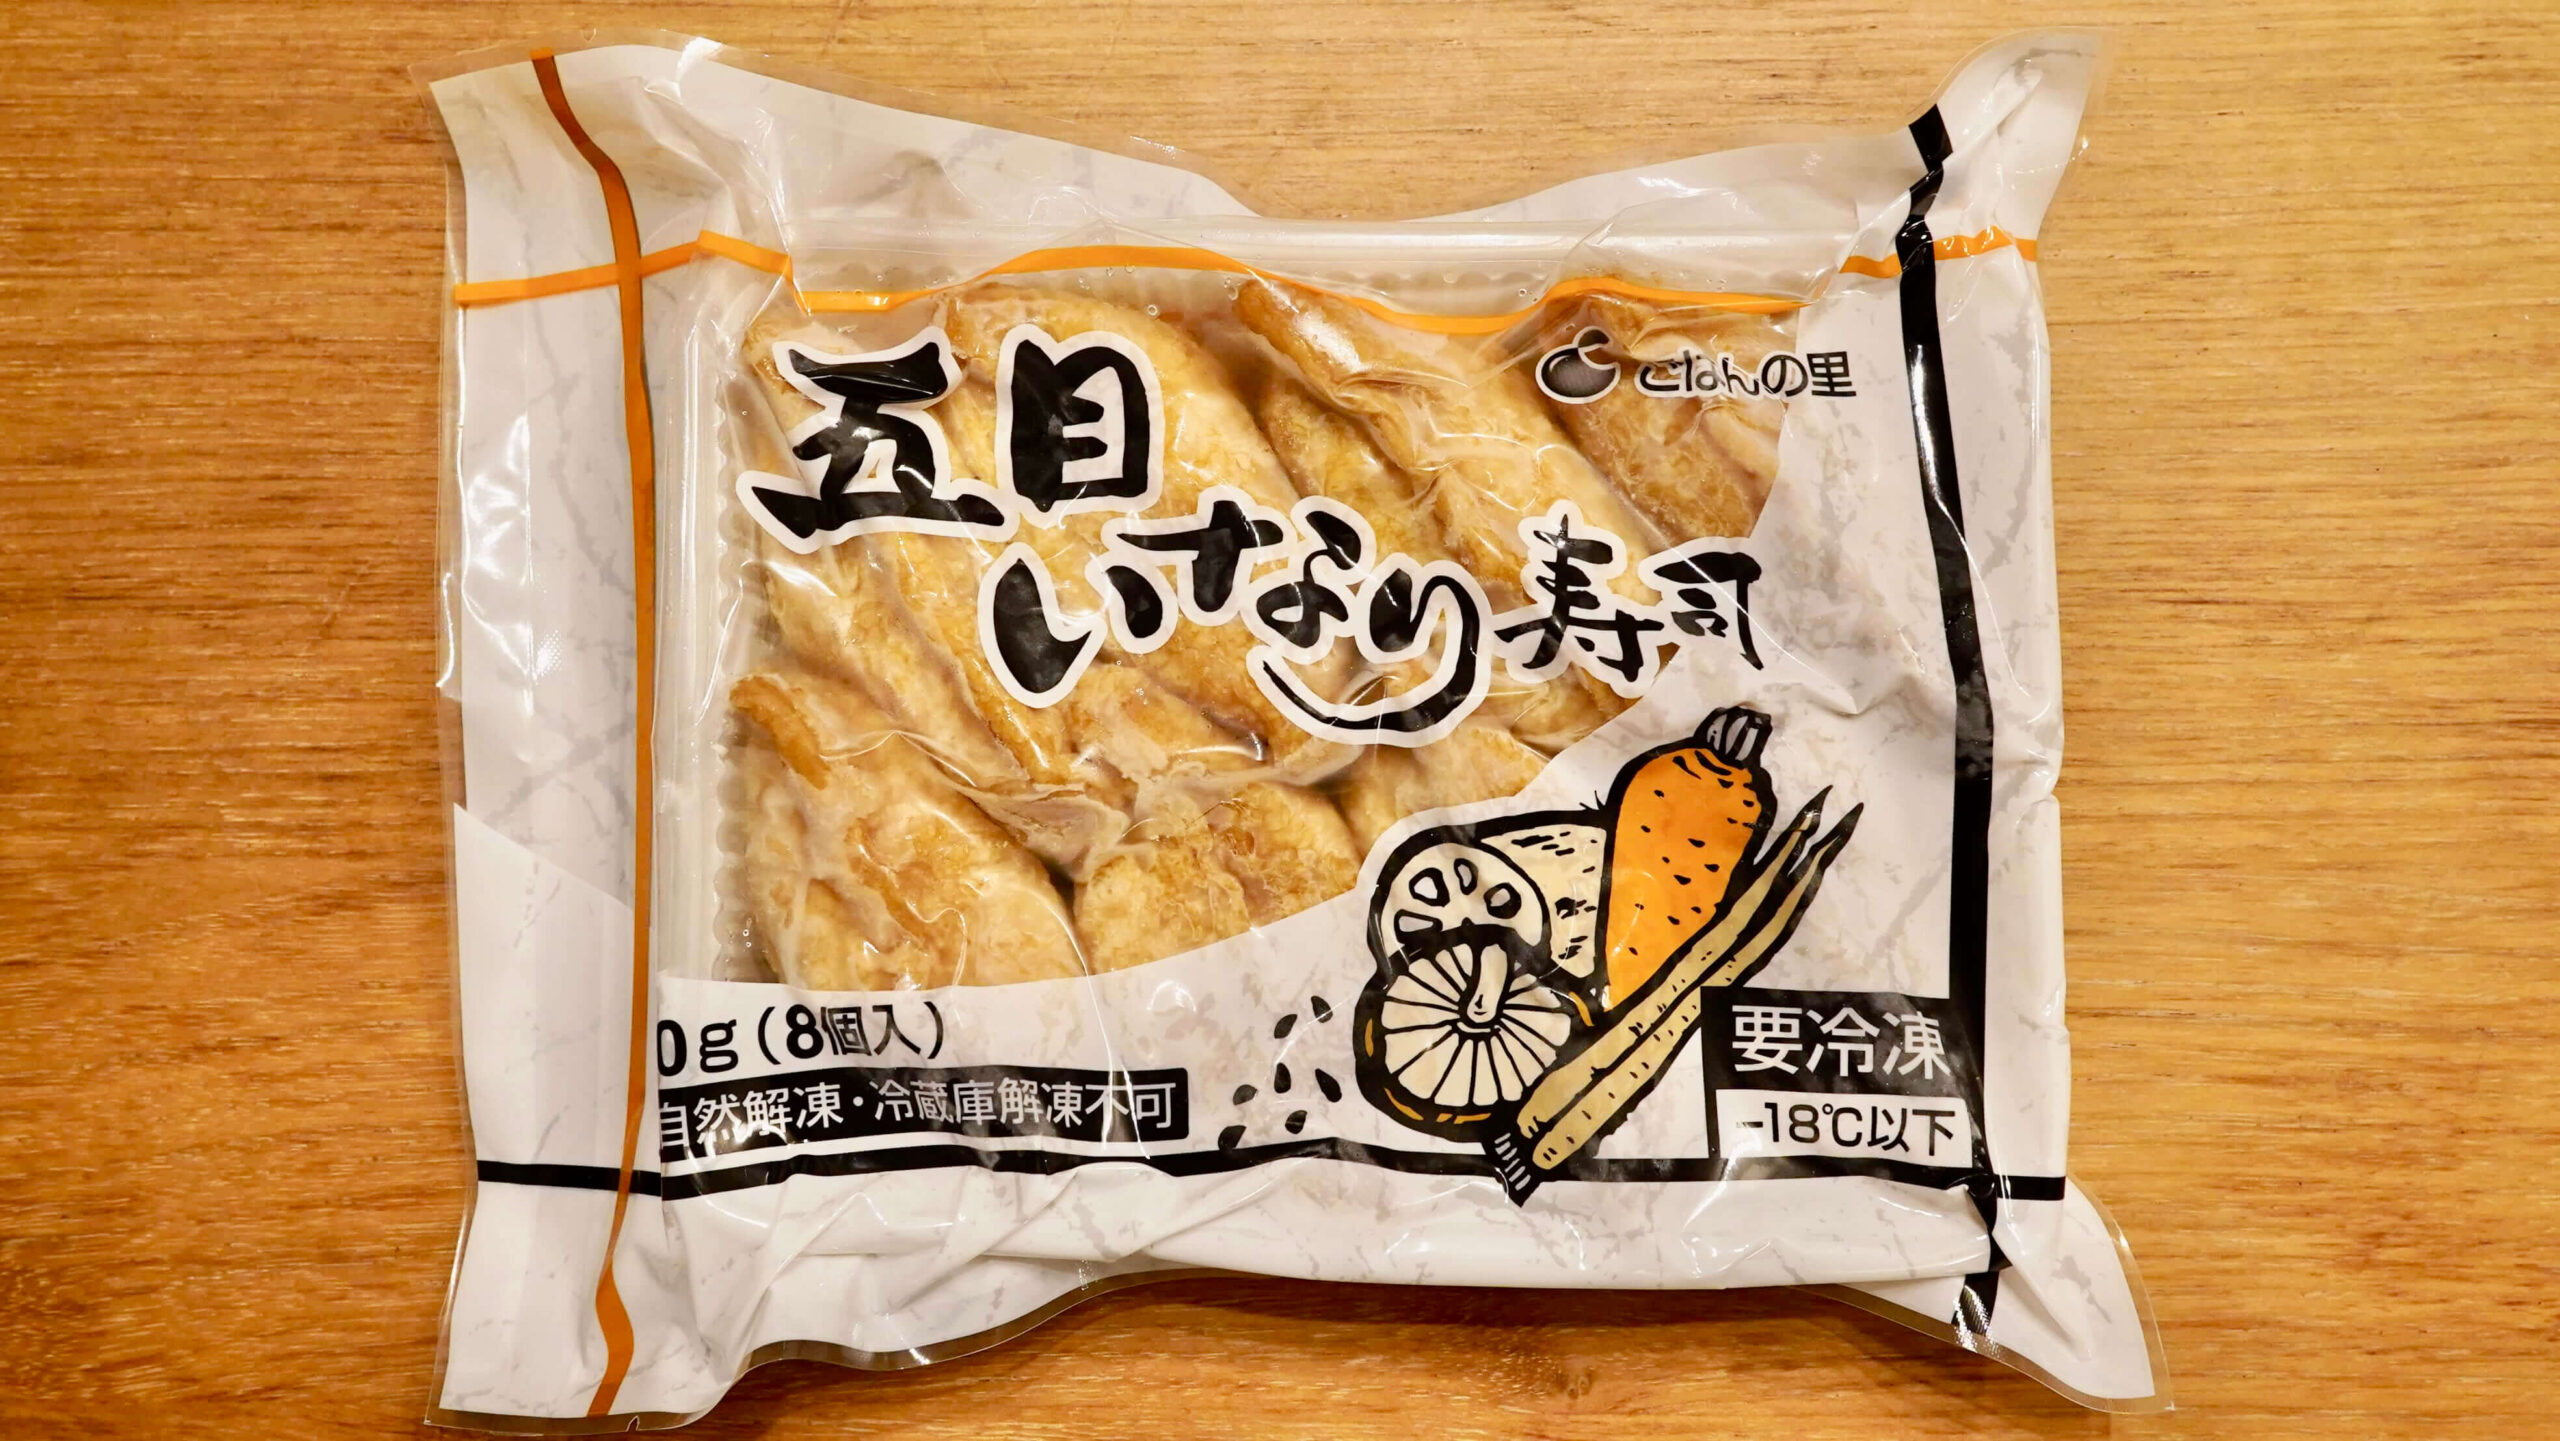 「ごはんの里」の冷凍食品「五目いなり寿司」のパッケージ写真